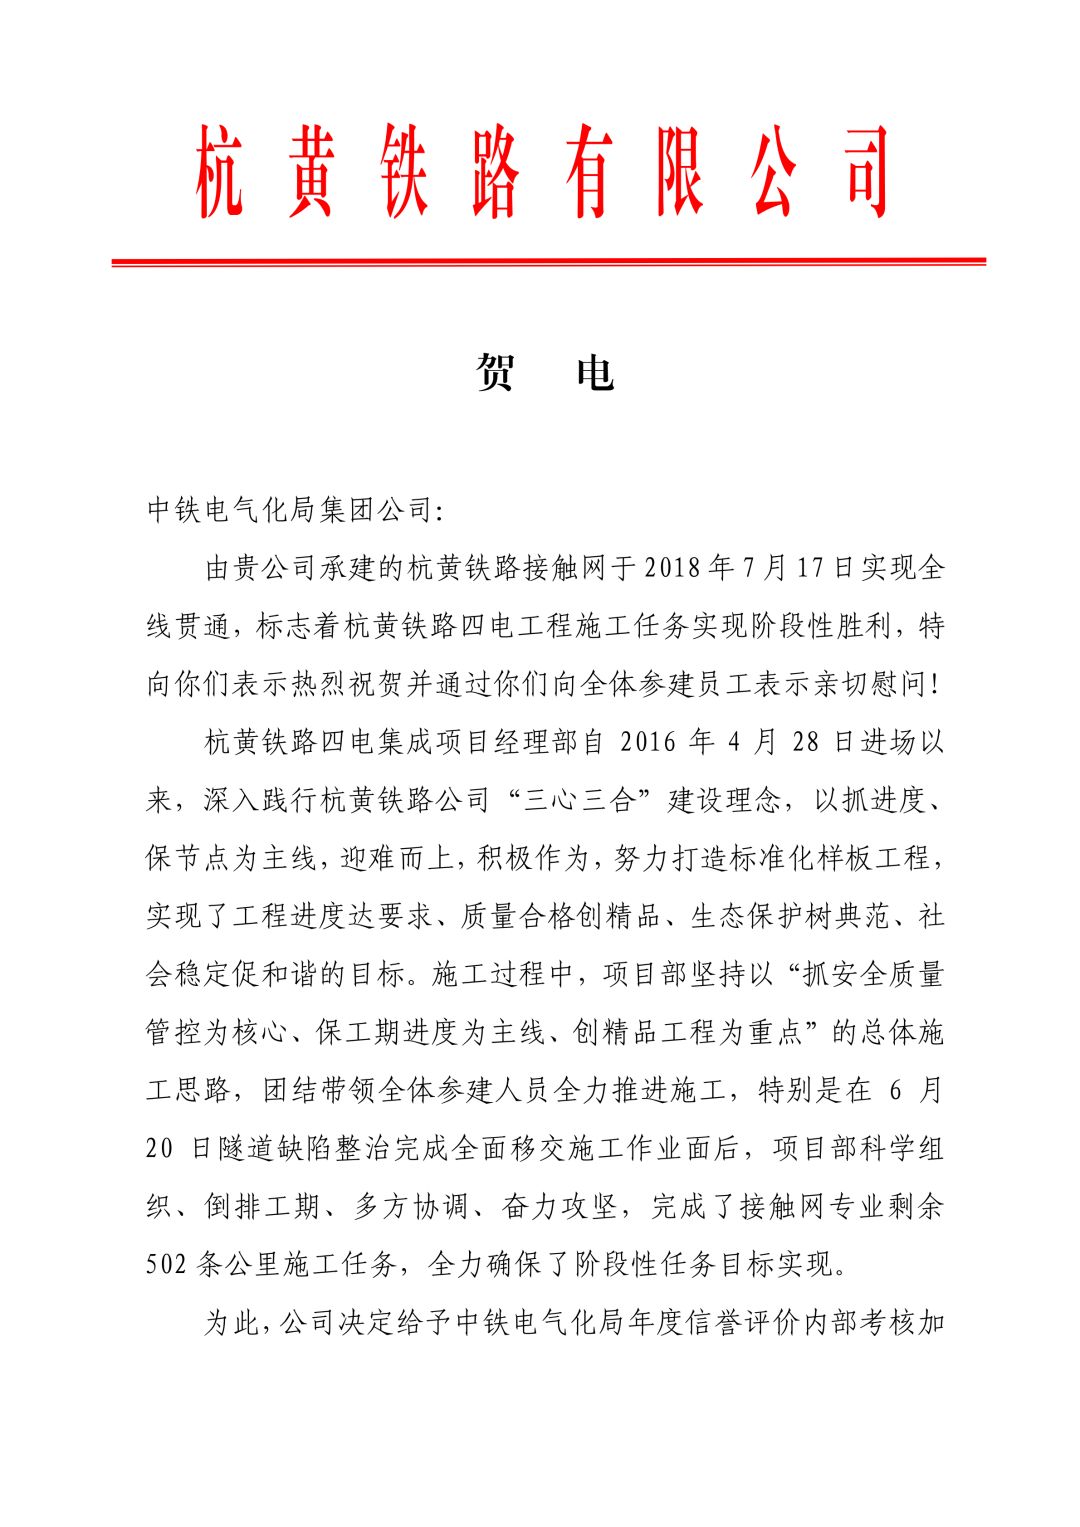 业绩榜杭黄铁路有限公司向中铁电气化局集团公司致贺电